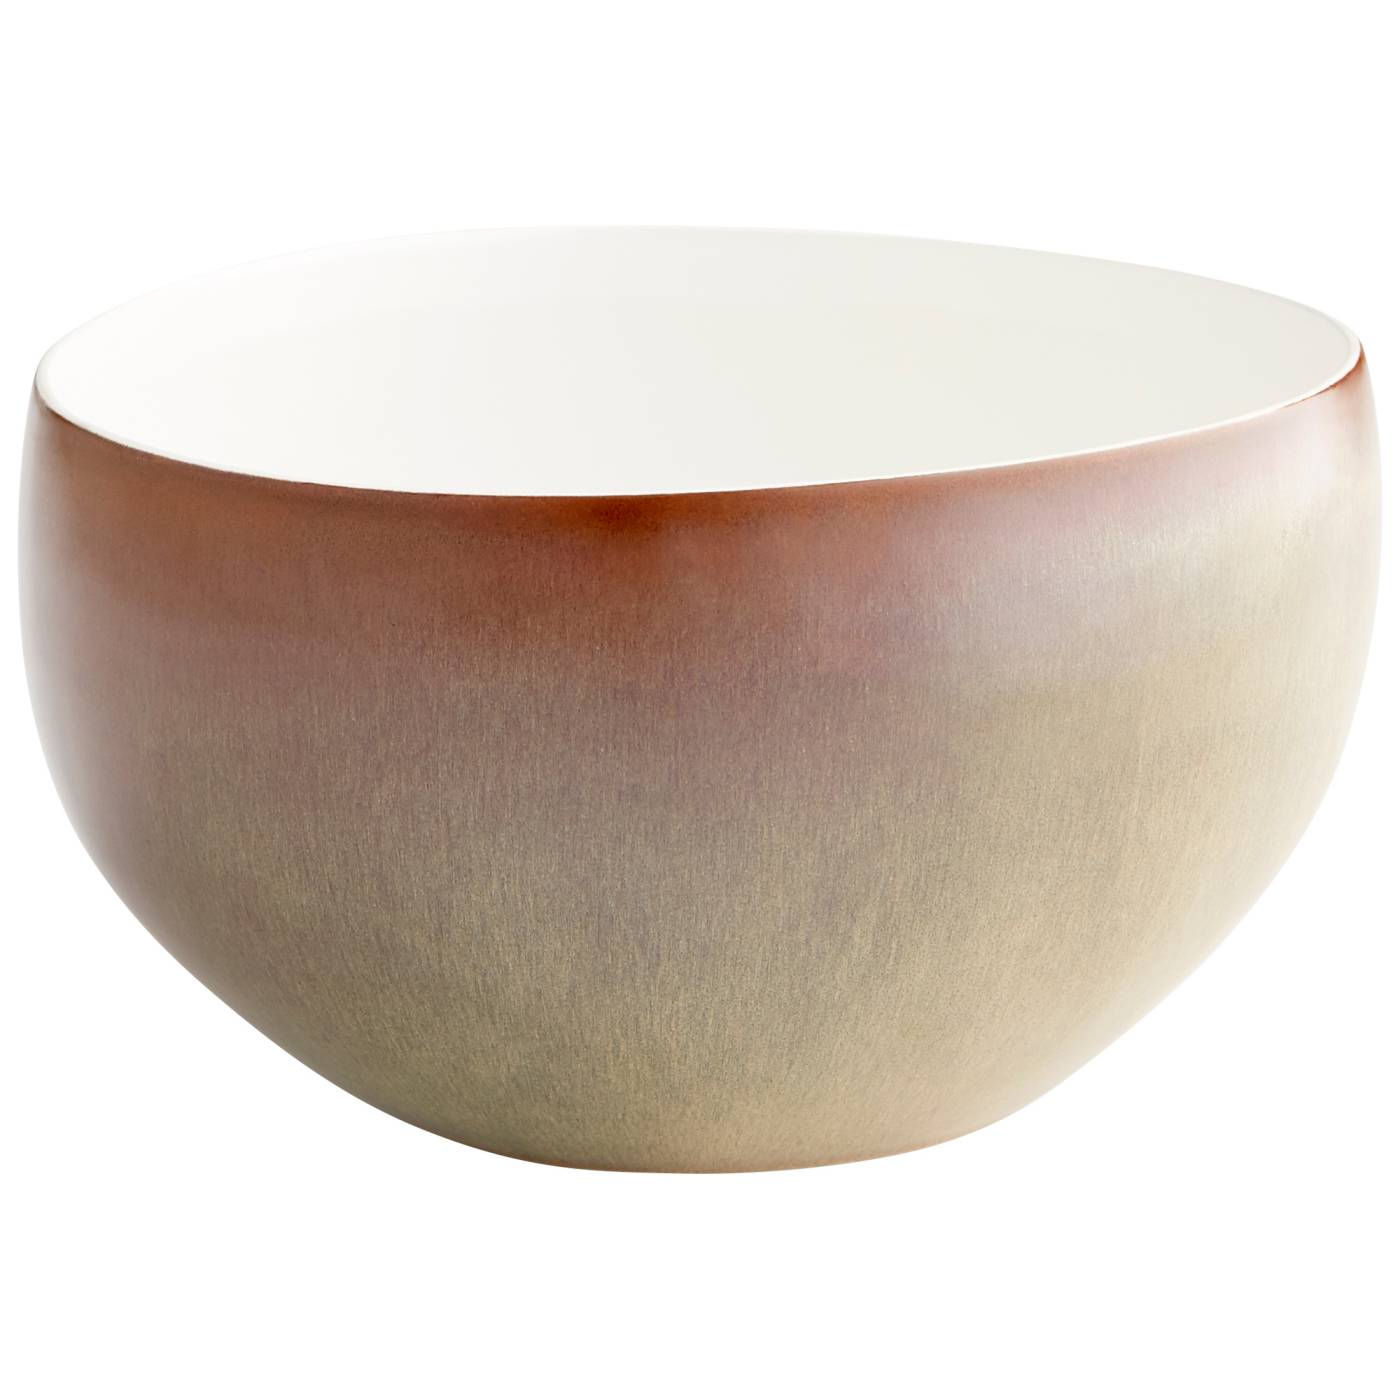 Marbled Dreams Bowl By Cyan Design | Cyan Design | Modishstore - 2